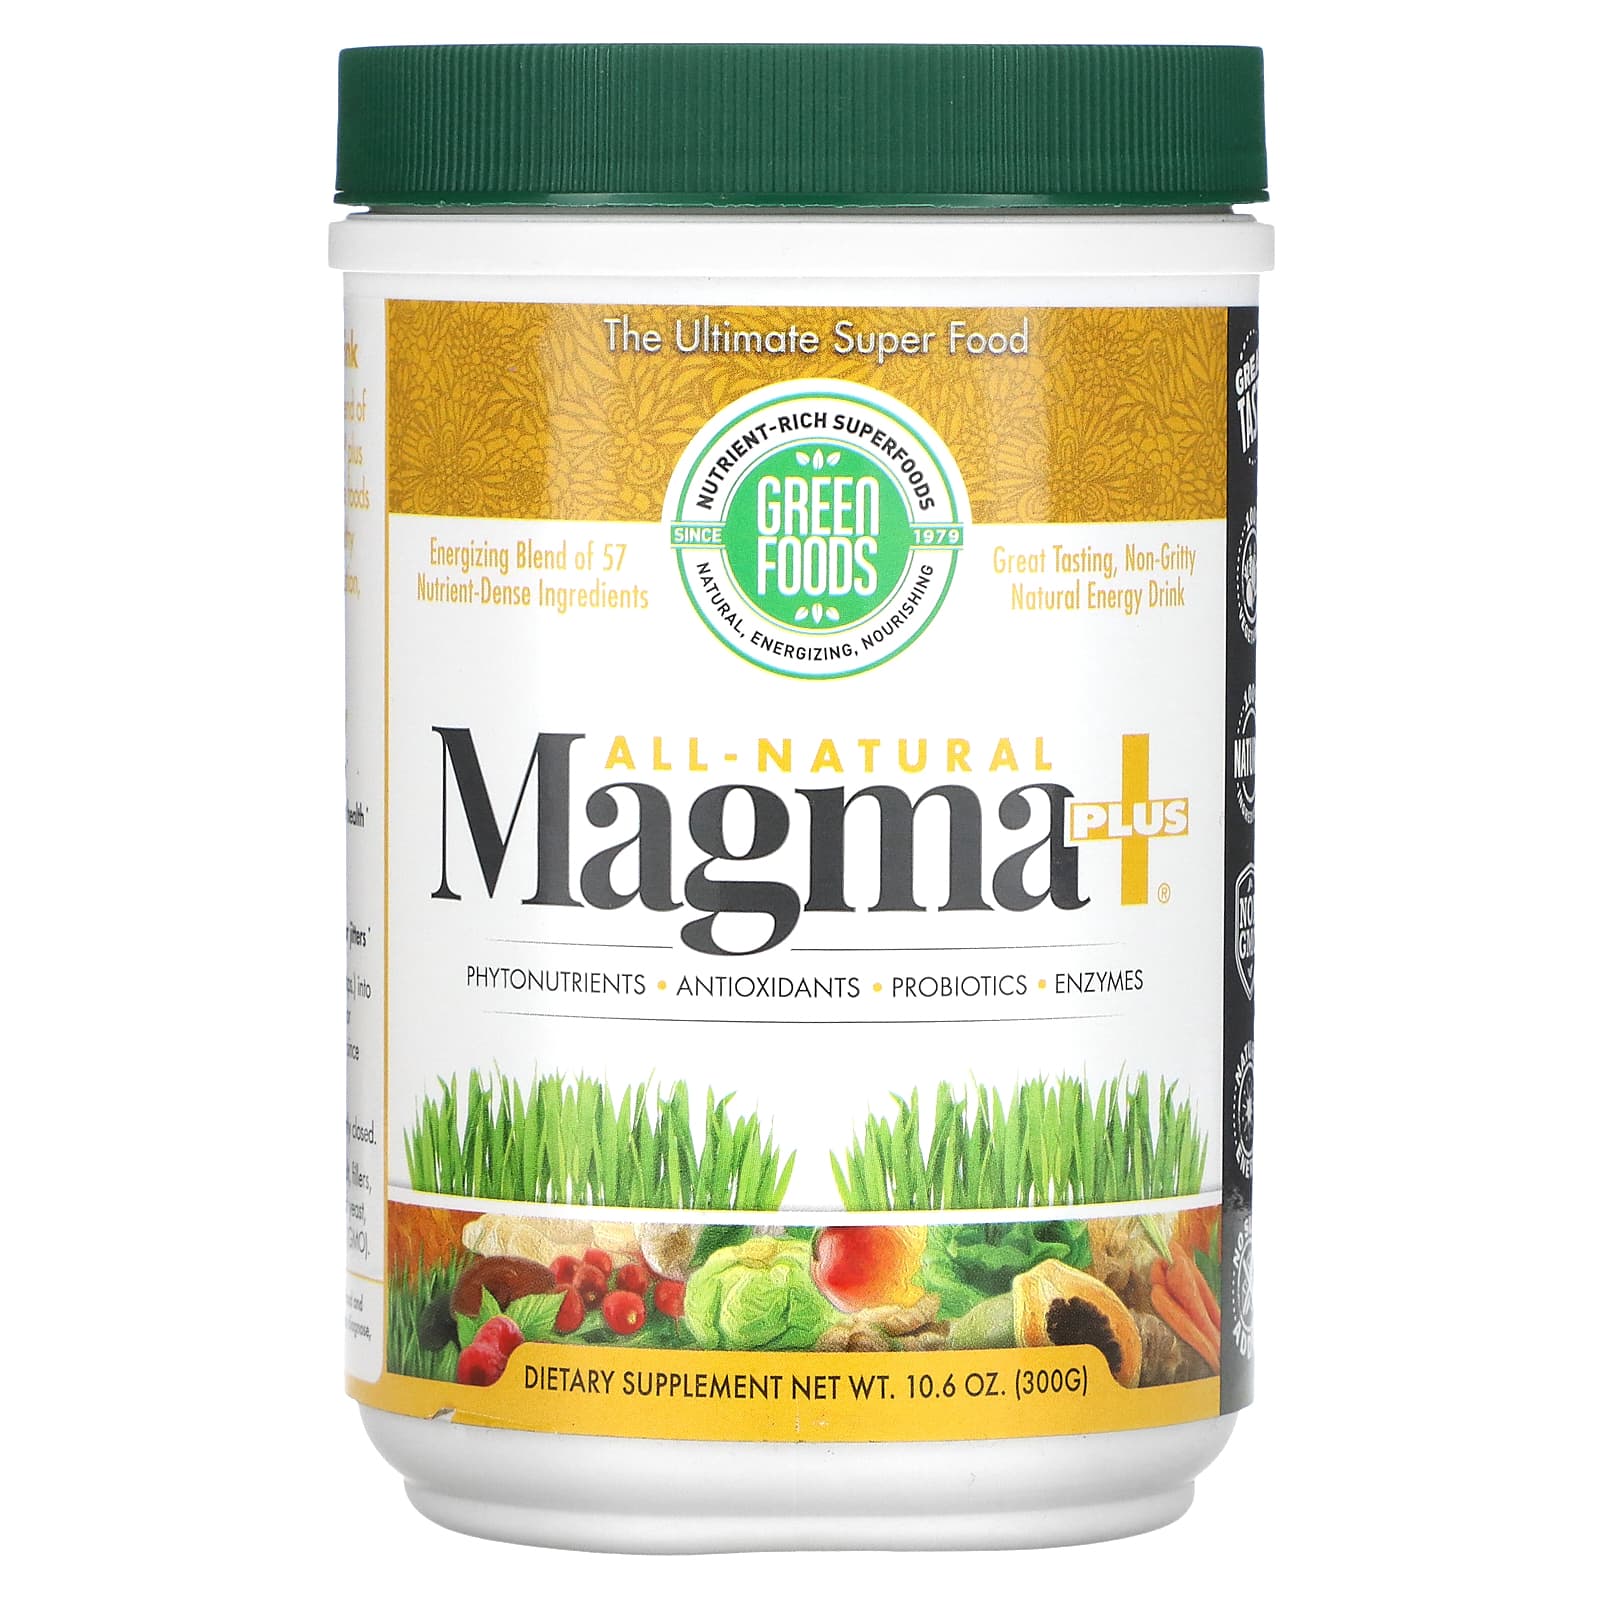 Green Foods Corporation All-Natural Magma Plus 10.6 oz (300 g) green foods corporation green magma сок ячменя 10 6 унций 300 г